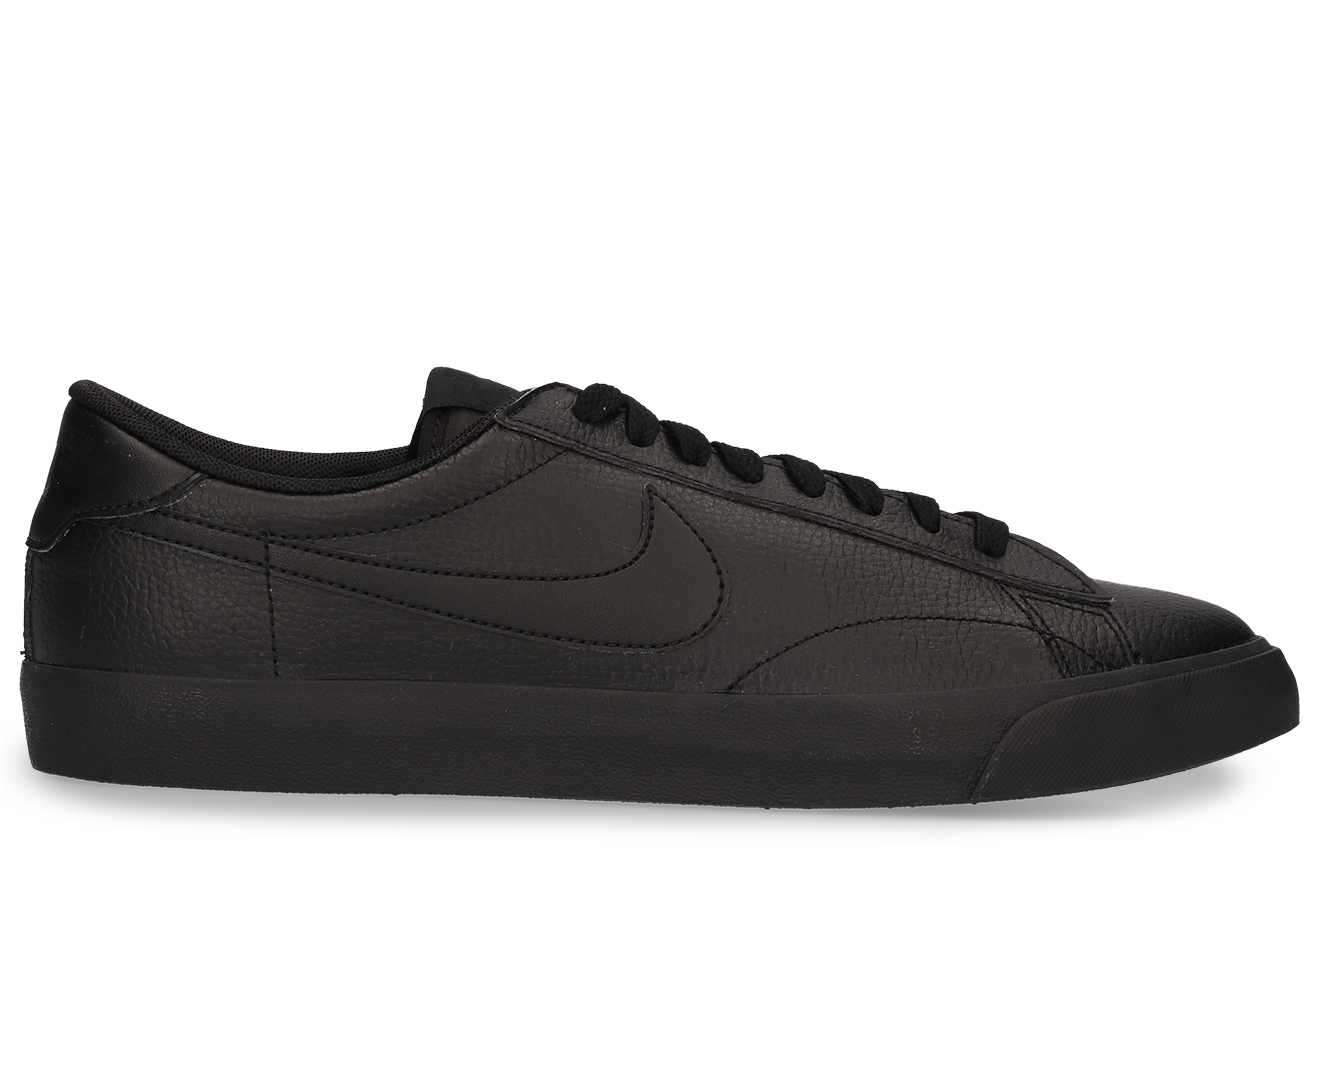 Nike Men's Tennis Classic AC Shoe - Black | Catch.co.nz